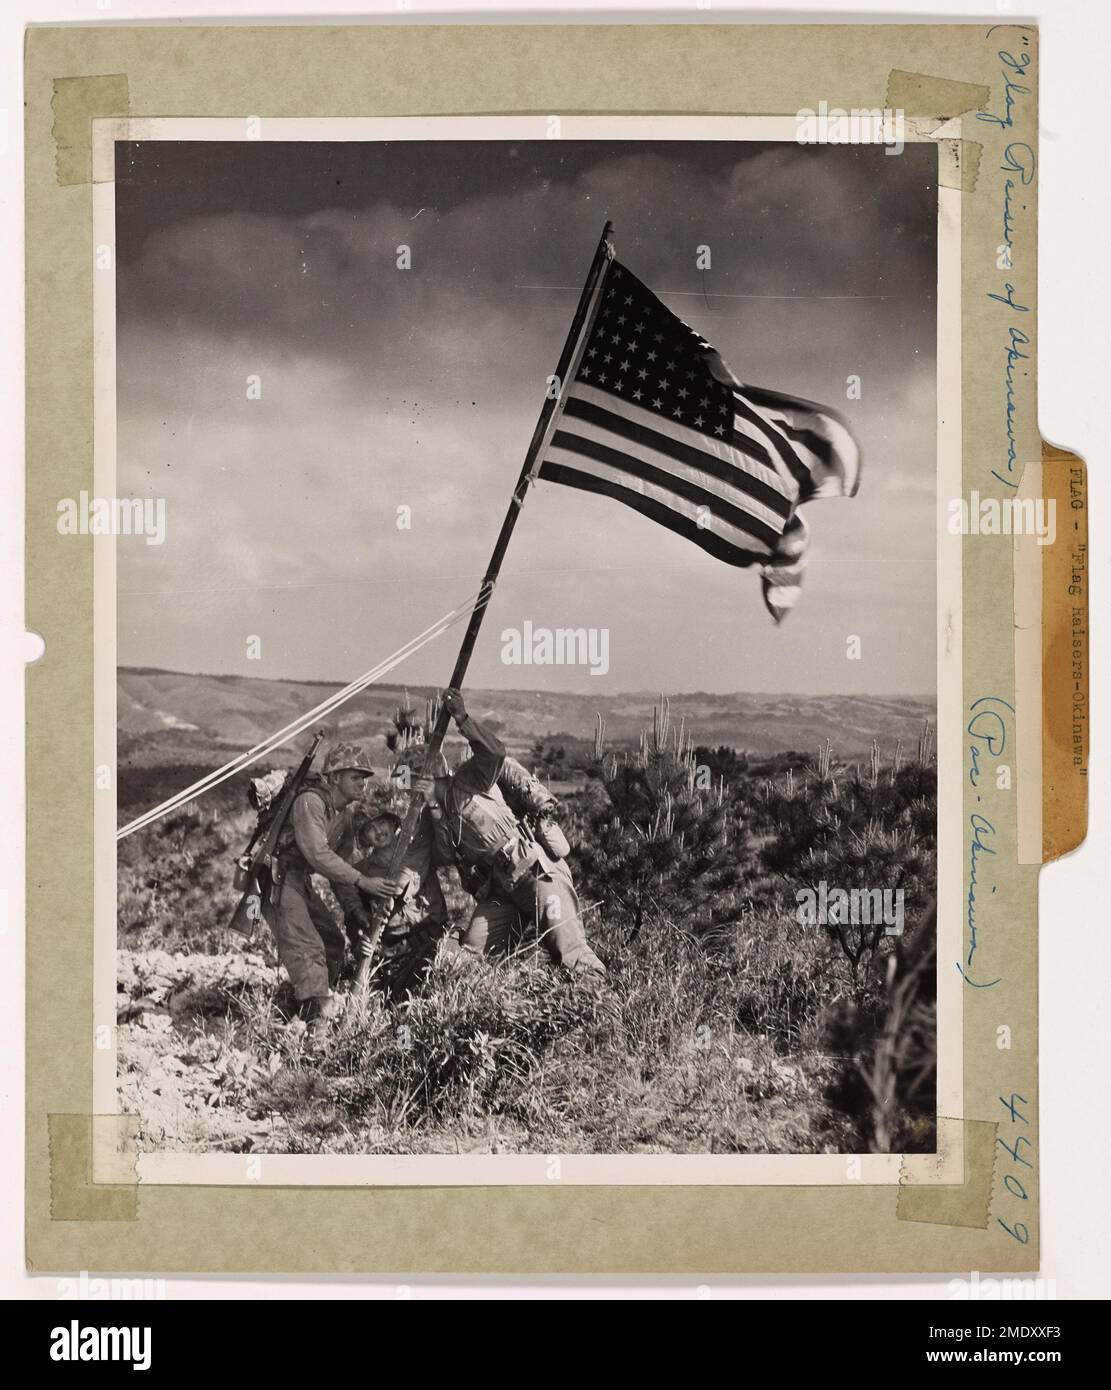 Die Flaggenheber von Okinawa. Die Marines und Küstenwachmänner imitieren die jetzt berühmte Flagge, die auf Iwo Jimas vulkanischem Berg Suribachi gehisst wird, und beugen sich dem Anpflanzen der ersten Sterne und Streifen, die über Okinawa winken. Die Flagge fing die Brise auf einer Höhe, von der aus das Meer auf beiden Seiten zu sehen war. Das viel gelobte Heraufsetzen der Fahne von Iwo Jima hat Soldaten zu einer heftigen Rivalität inspiriert, bei jeder neuen Inseleroberung mitzuwirken, um die „ersten“ Farben zu entfalten. Diese Flagge wurde gespendet von der Crew einer von der Küstenwache bemannten LST, die Männer und Material auf Okinawas Sand entladete. Stockfoto